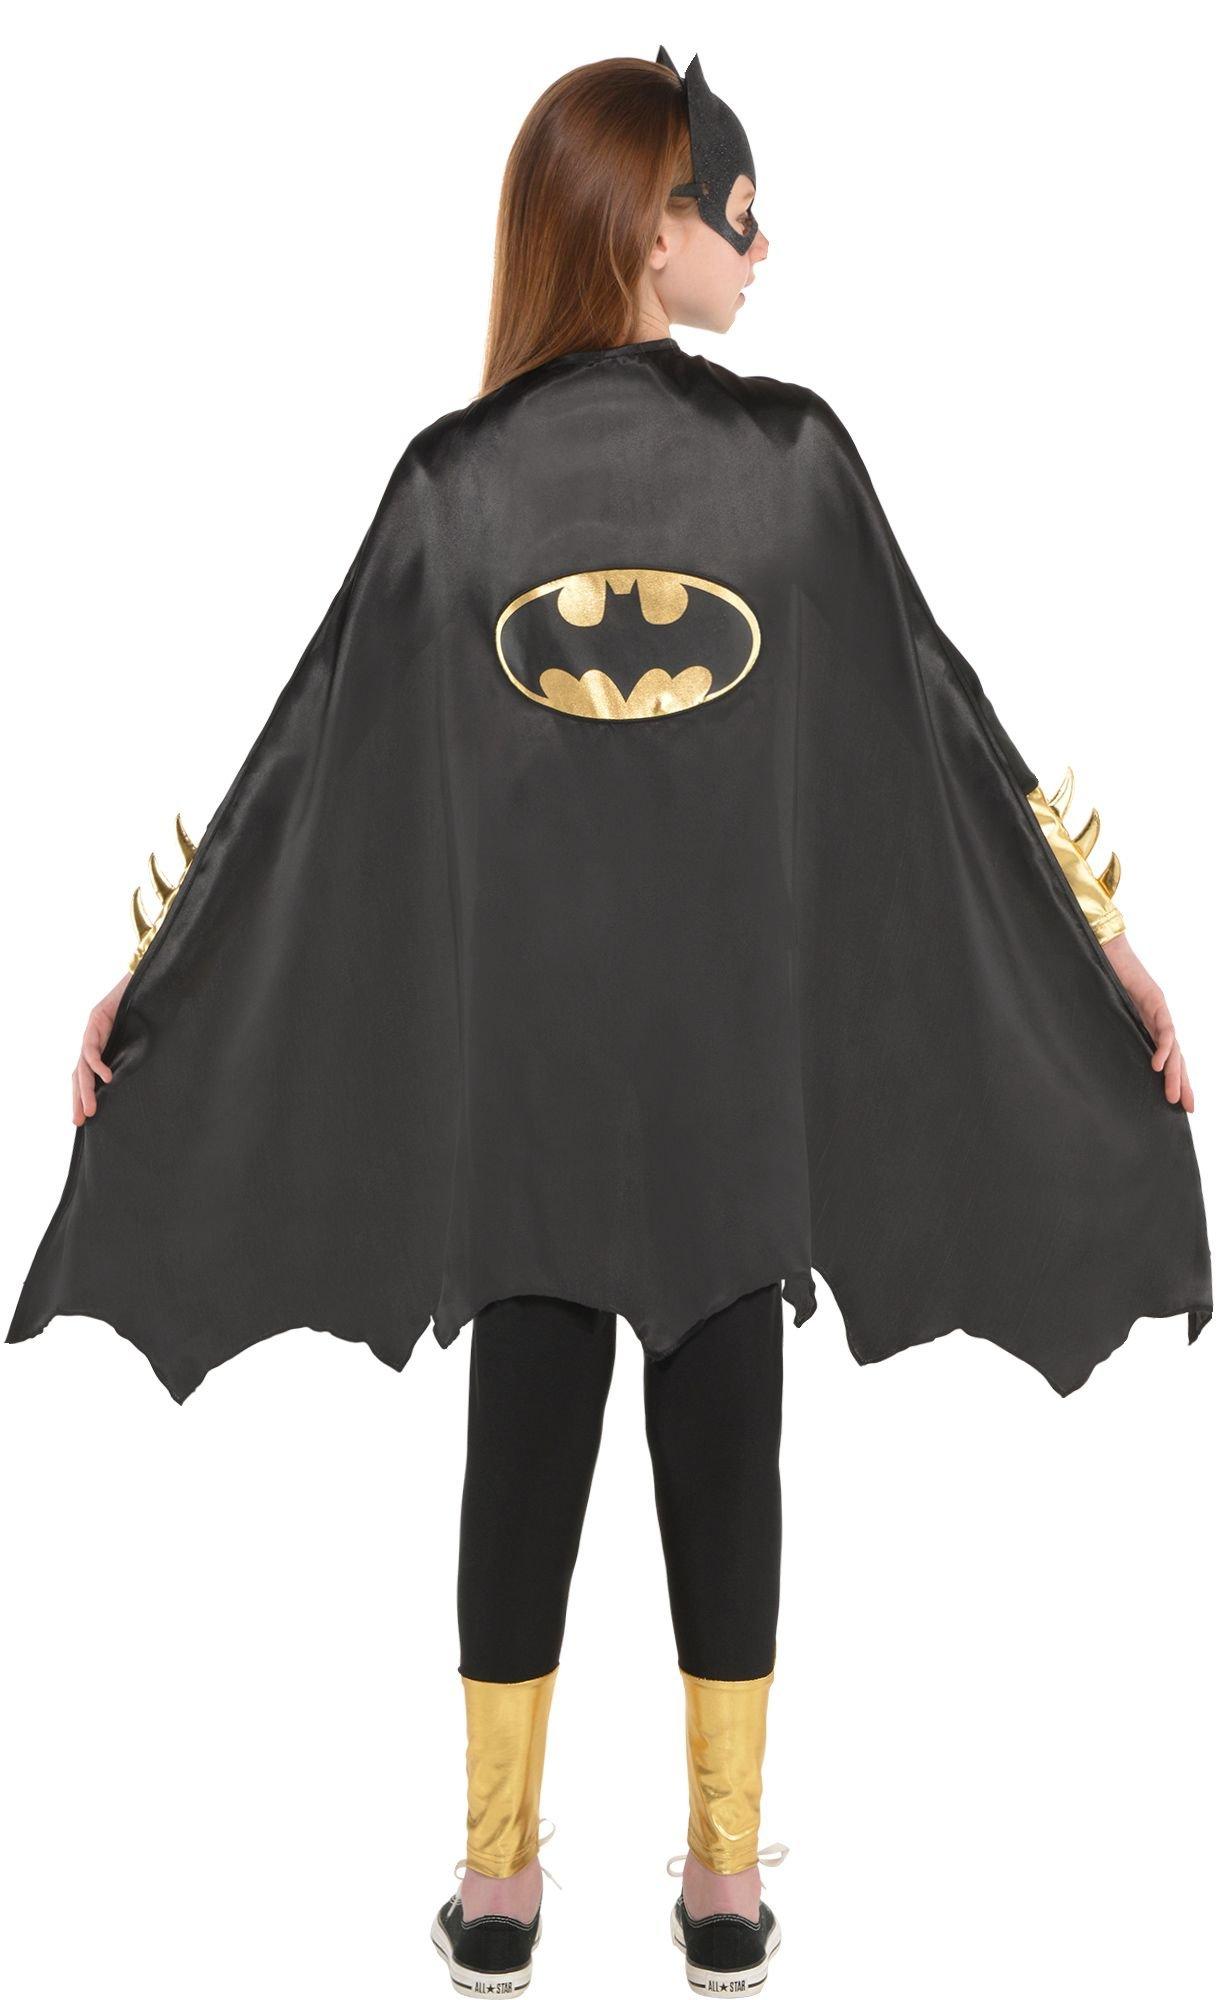 Ciao- Batman Classic Costume déguisement Adult Original DC Comics